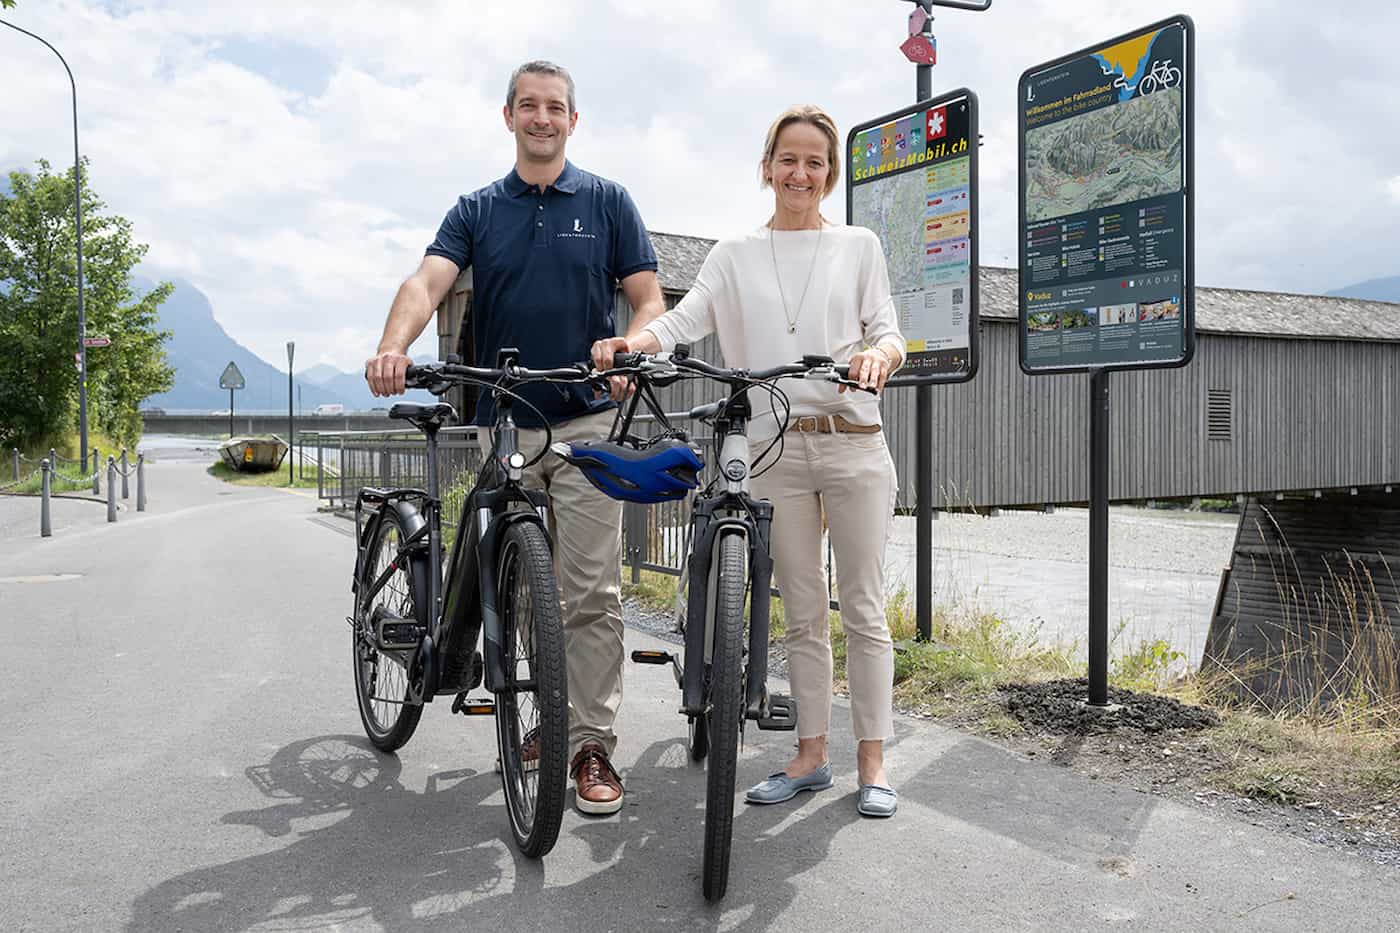 Die Bürgermeisterin von Vaduz Petra Miescher und Matthias Kramer, Bereichsleiter Tourismus & Wirtschaft bei Liechtenstein Marketing, freuen sich die ersten Informationstafeln offiziell einzuweihen.